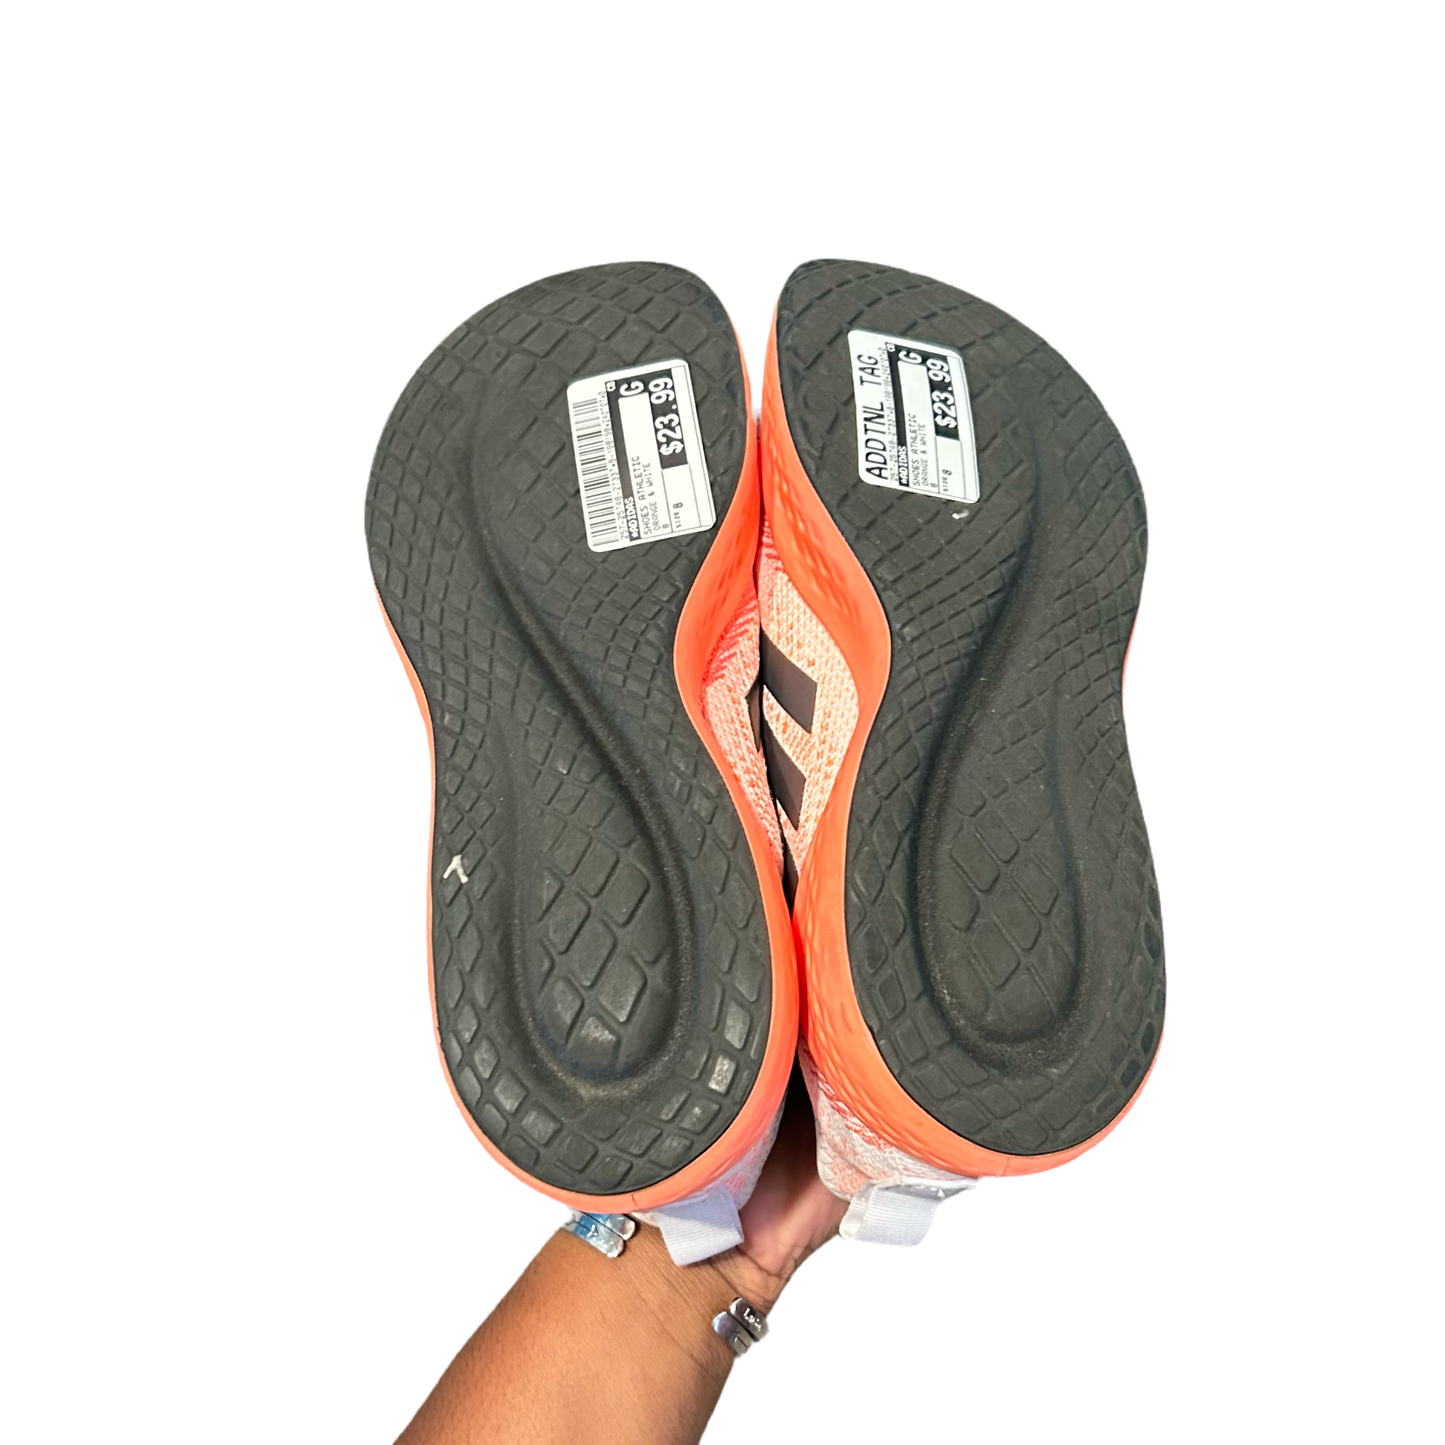 Orange & White Shoes Athletic By Adidas, Size: 8